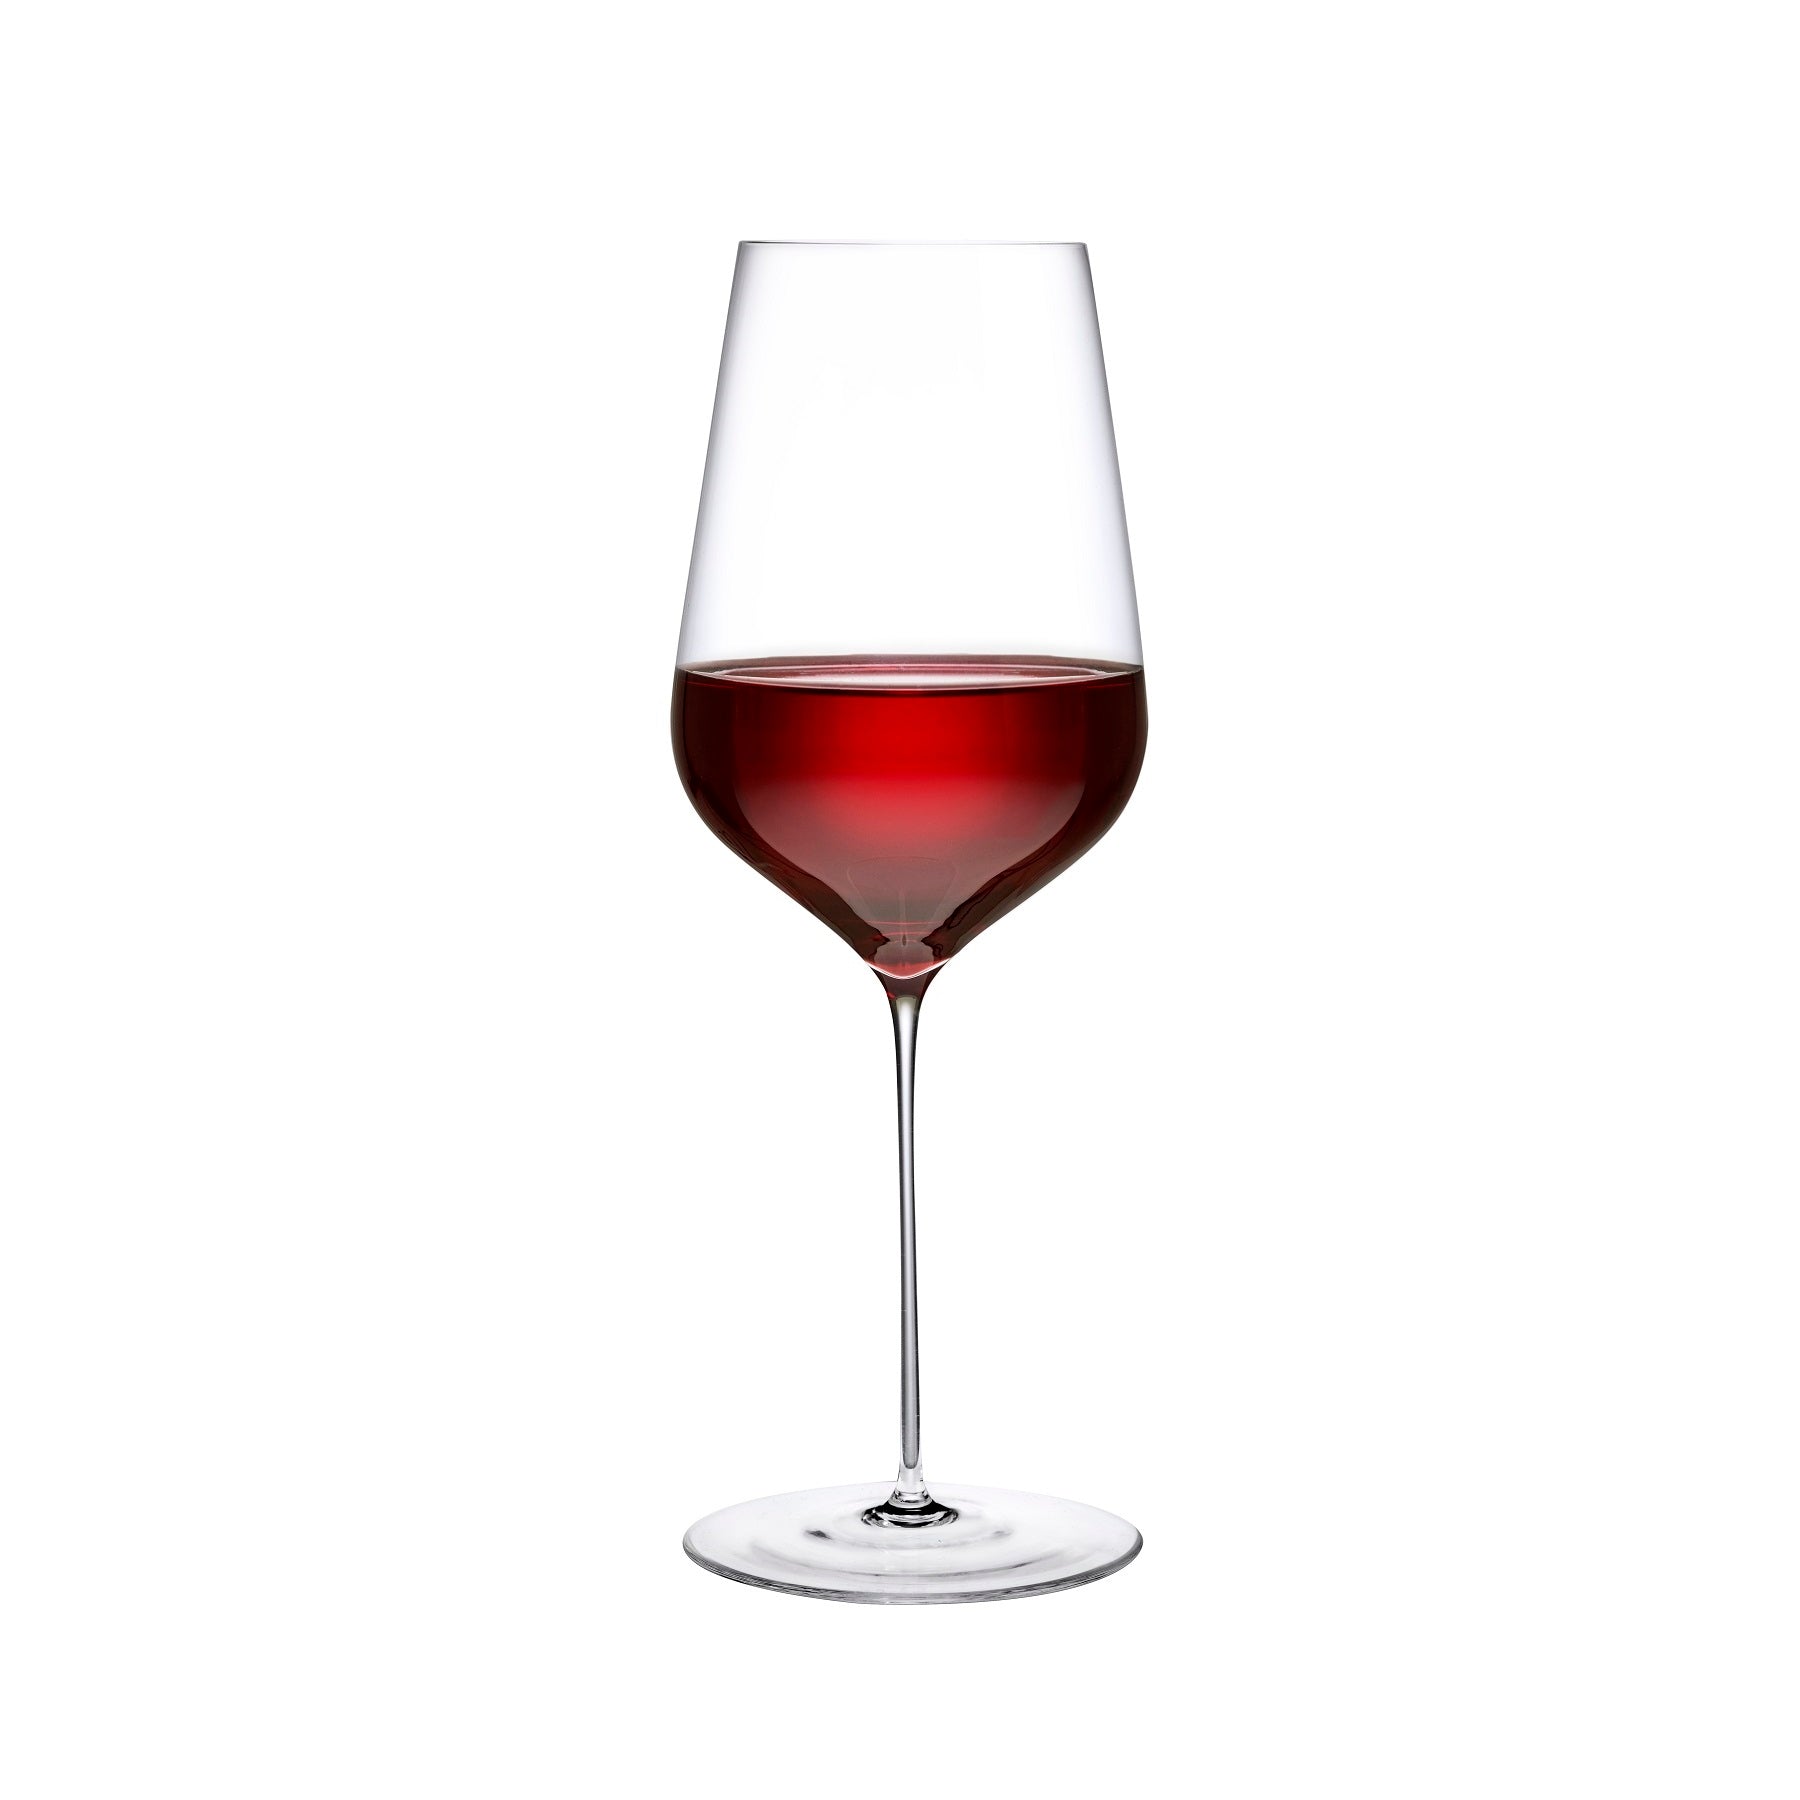 Stem Zero Trio Red Wine Glass